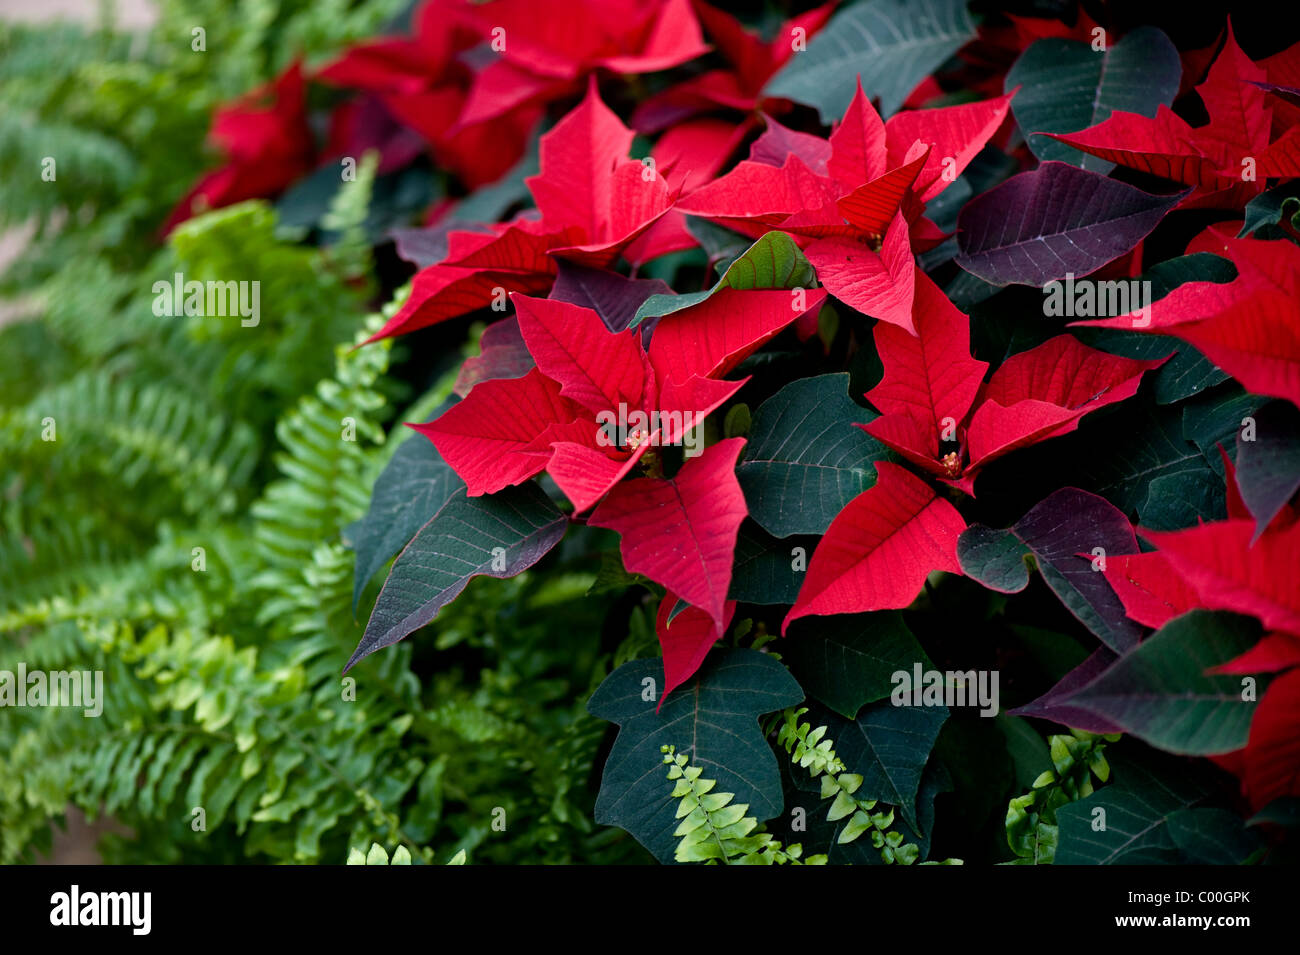 Close-up image of vibrant red Poinsettia -  Euphorbia pulcherrima - noche buena festive leaves Stock Photo